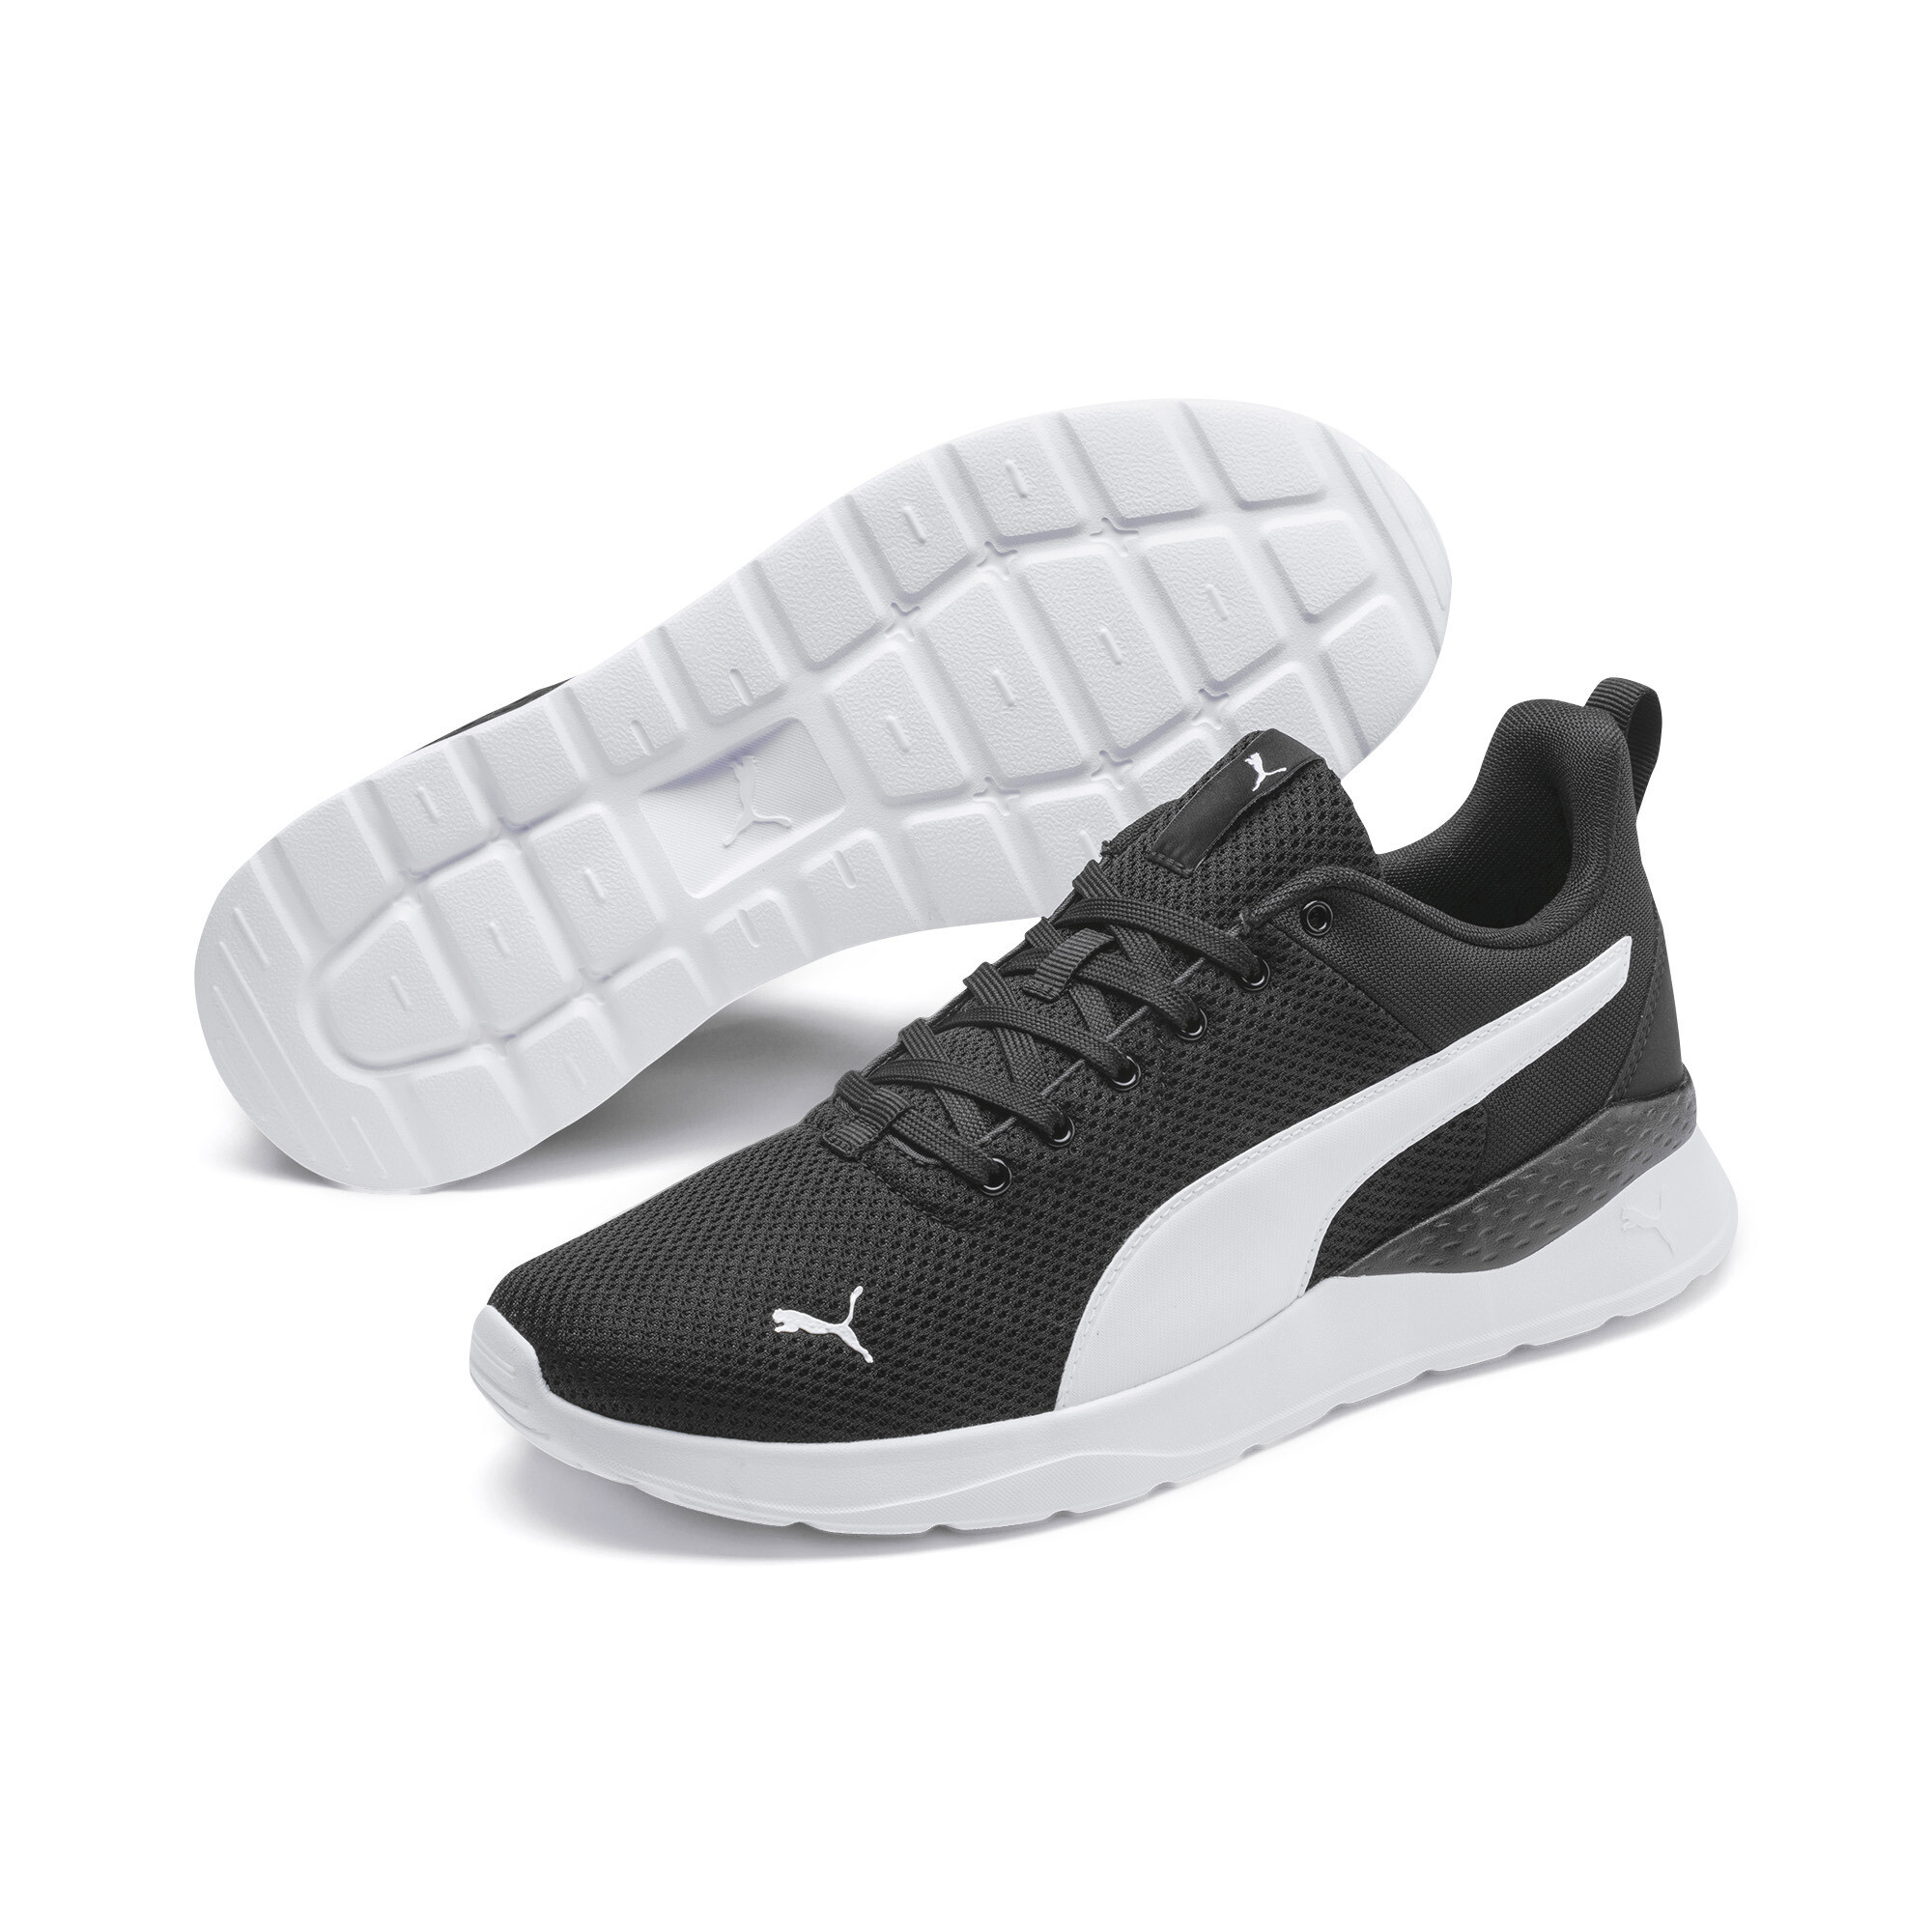 Men's PUMA Anzarun Lite Trainers Shoes In Black, Size EU 44.5